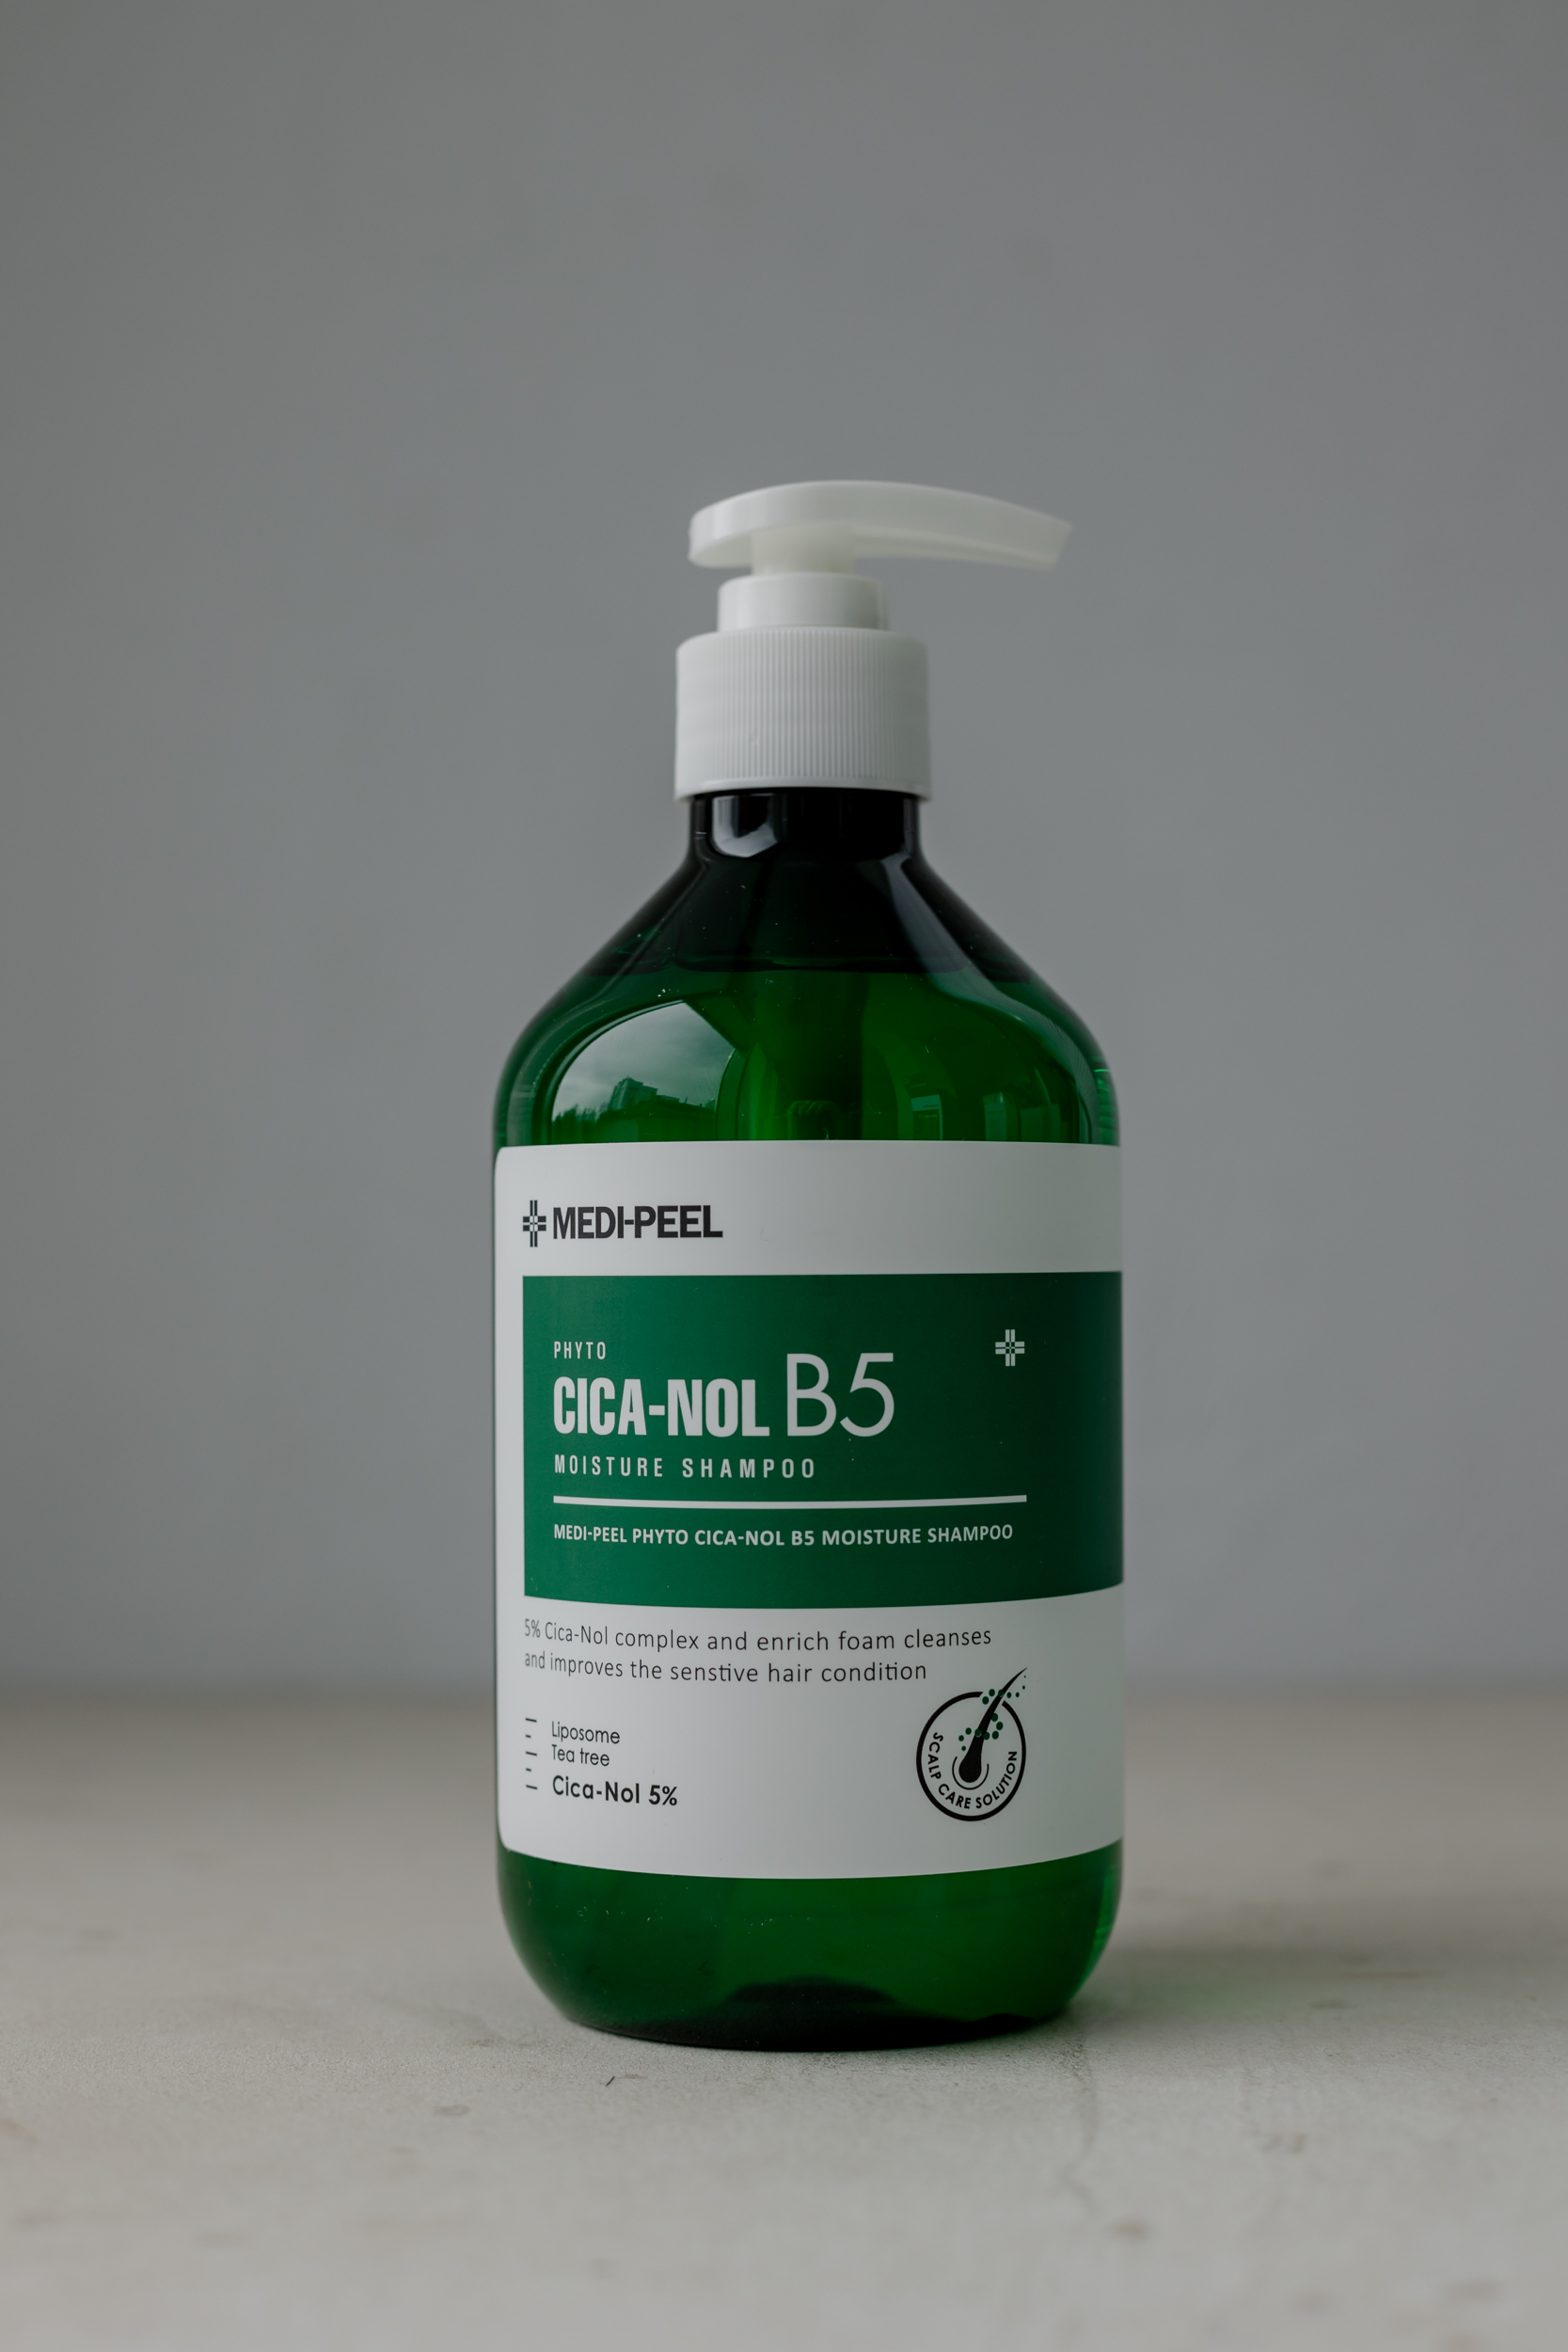 BU// Лечебный шампунь с успокаивающим комплексом MEDI-PEEL Phyto CICA-Nol B5 Moisture Shampoo 500ml